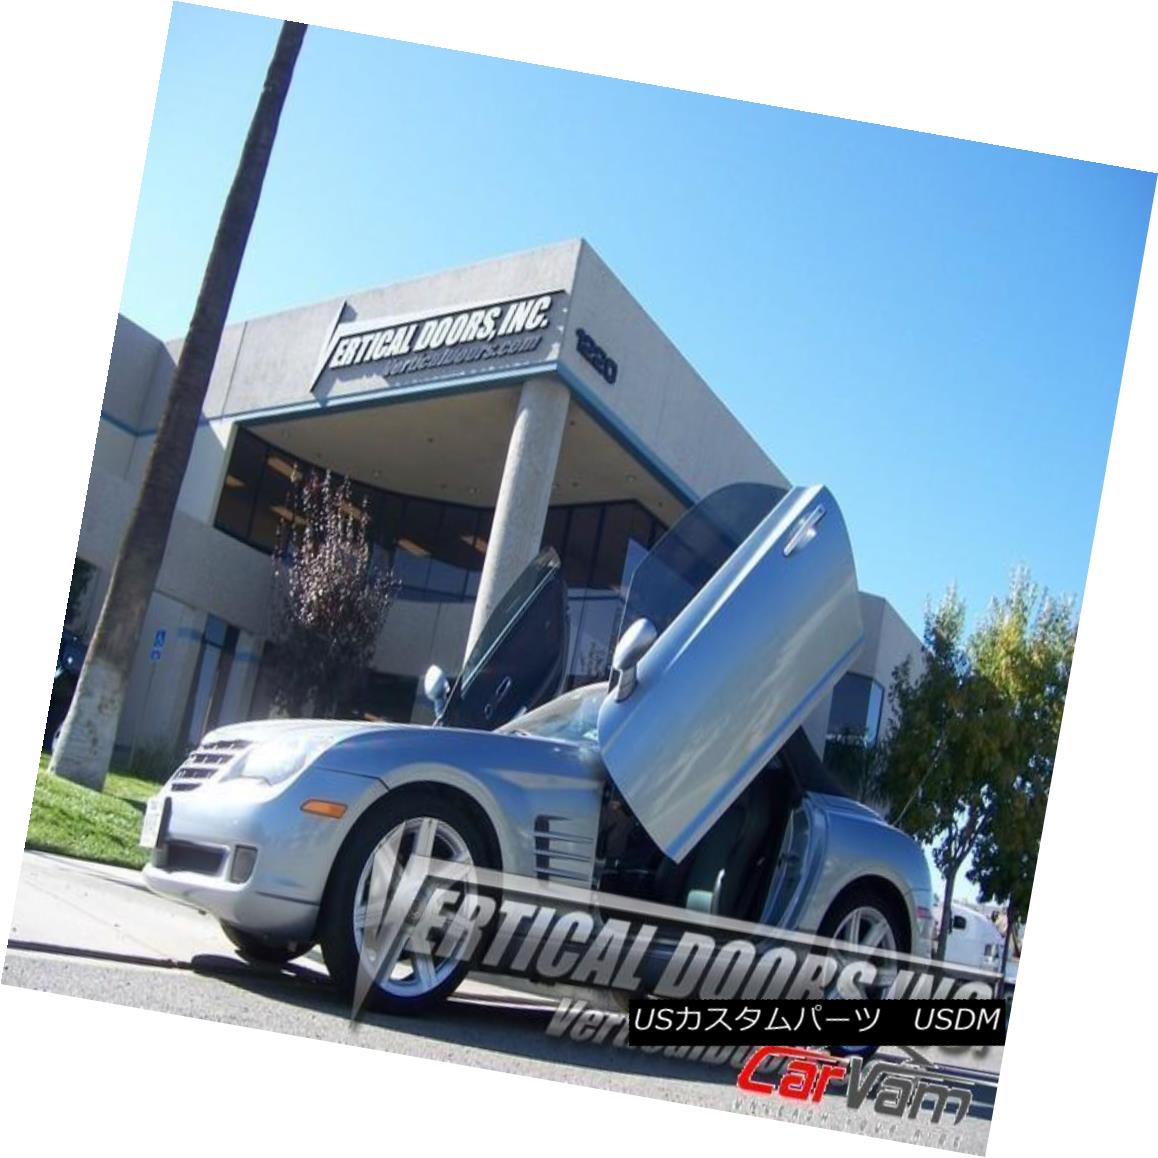 ガルウィングキット Vertical Doors - Vertical Lambo Door Kit For Chrysler Crossfire 2004-08 2DR 垂直ドア - クライスラーCrossfire 2004-08 2DRのための垂直Lamboドアキット